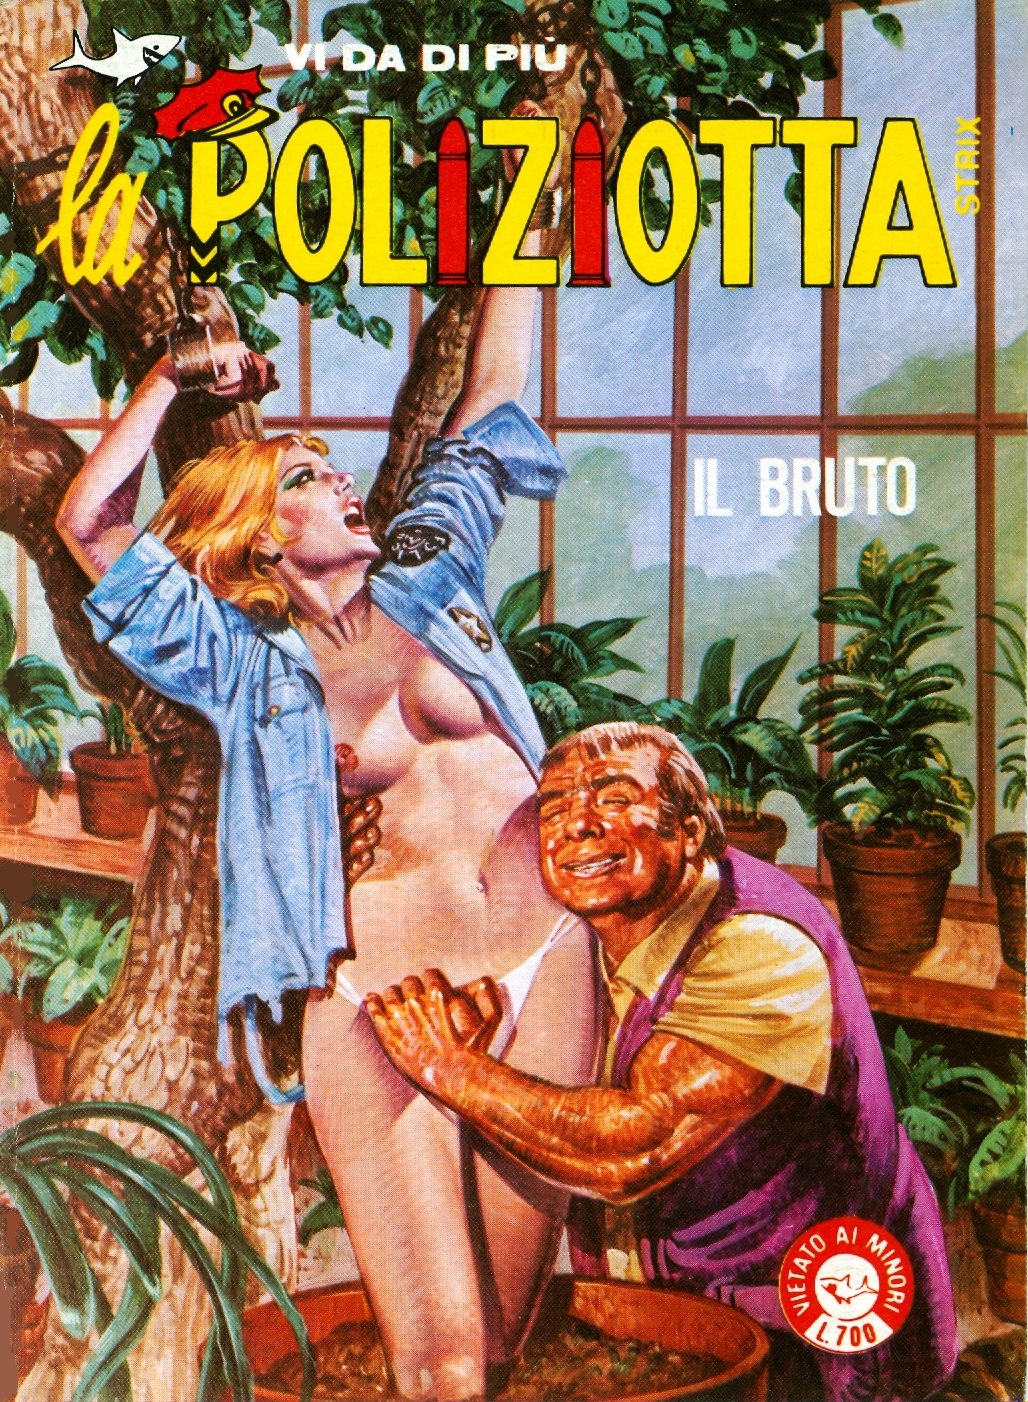 комиксы итальянской эротики фото 87